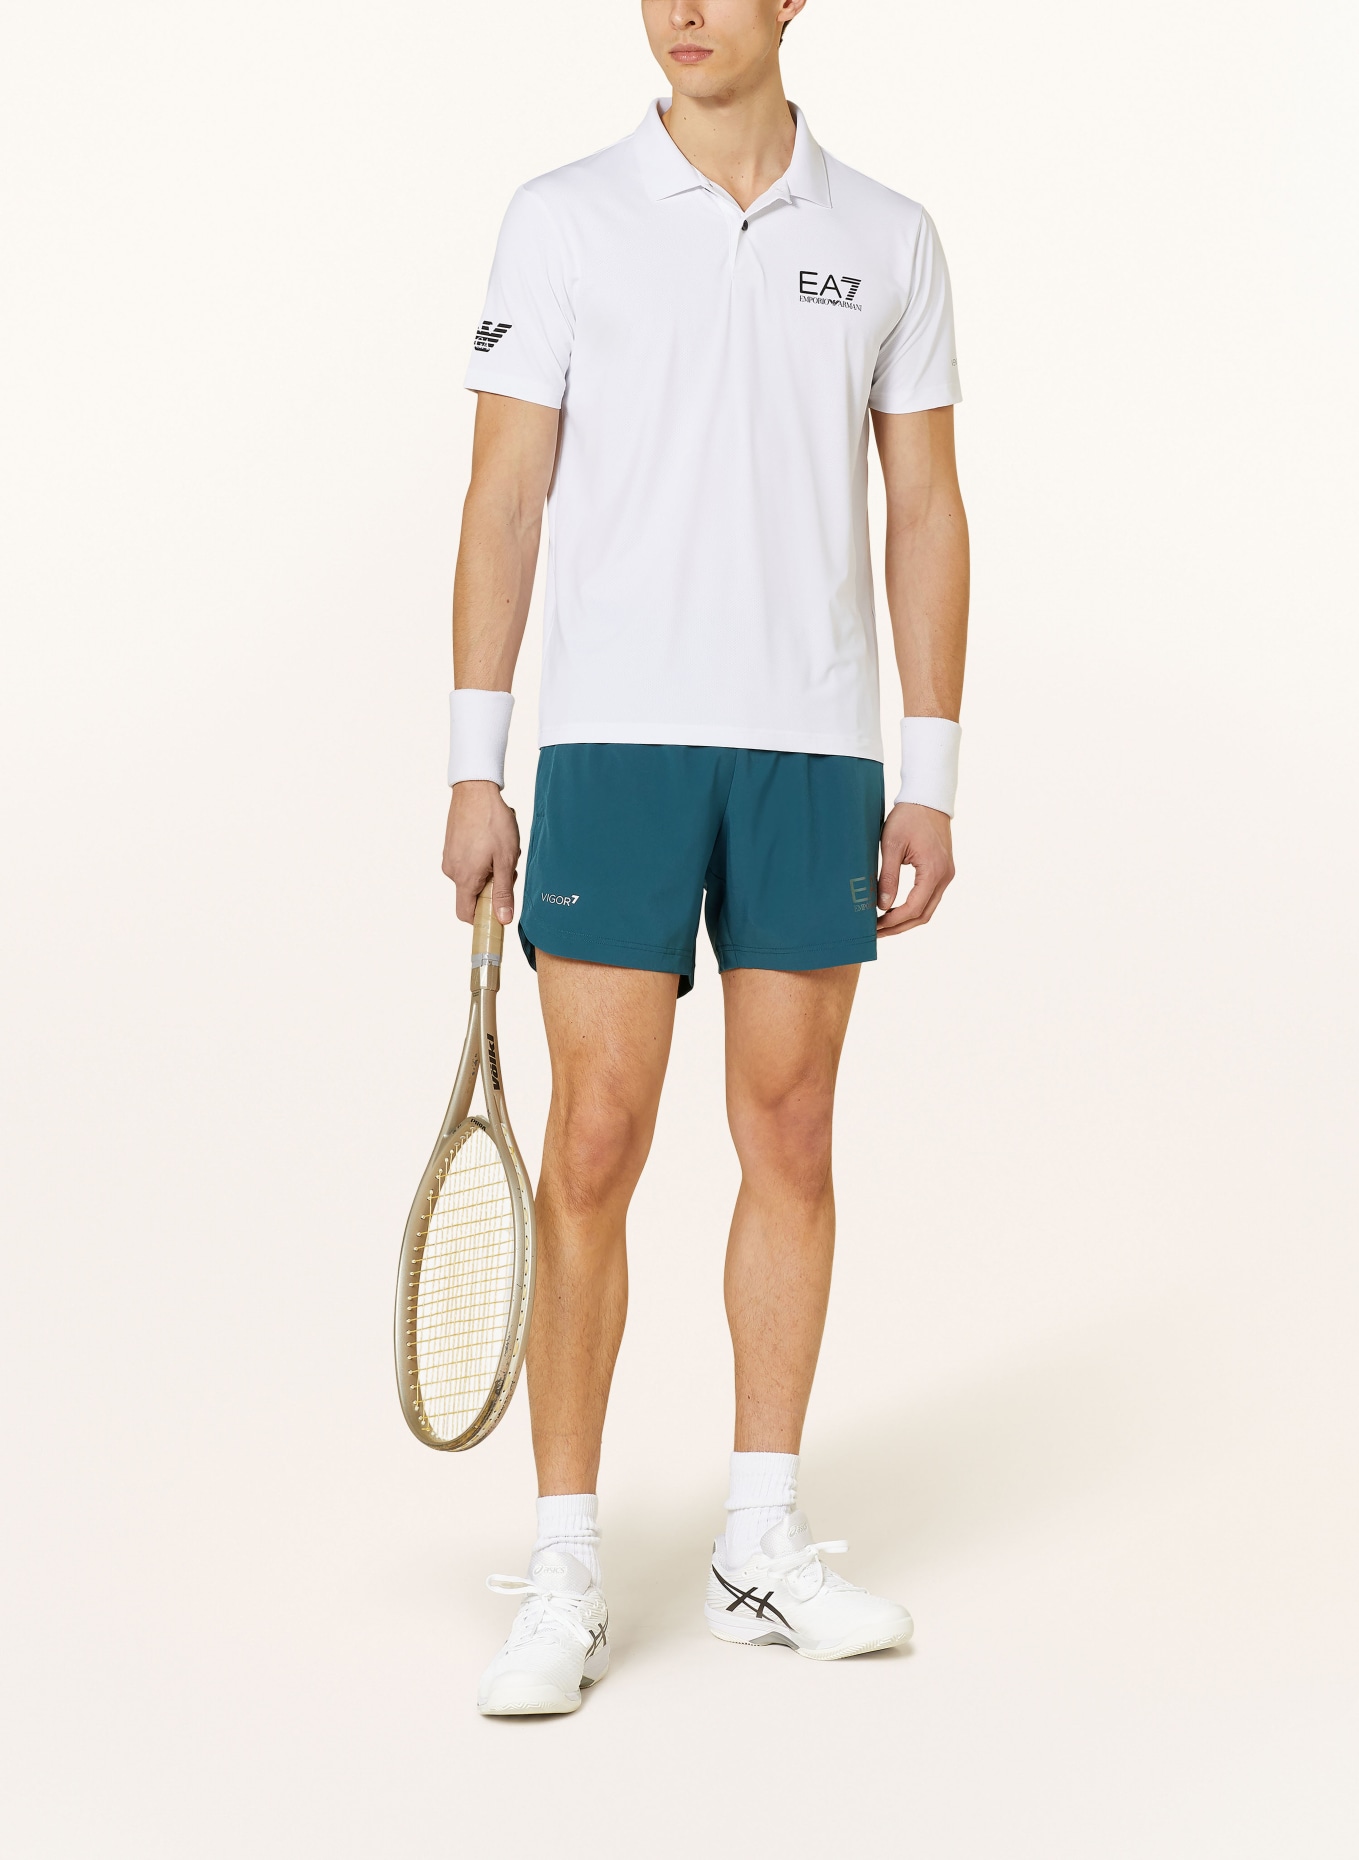 EA7 EMPORIO ARMANI Tennis shorts, Color: TEAL (Image 2)